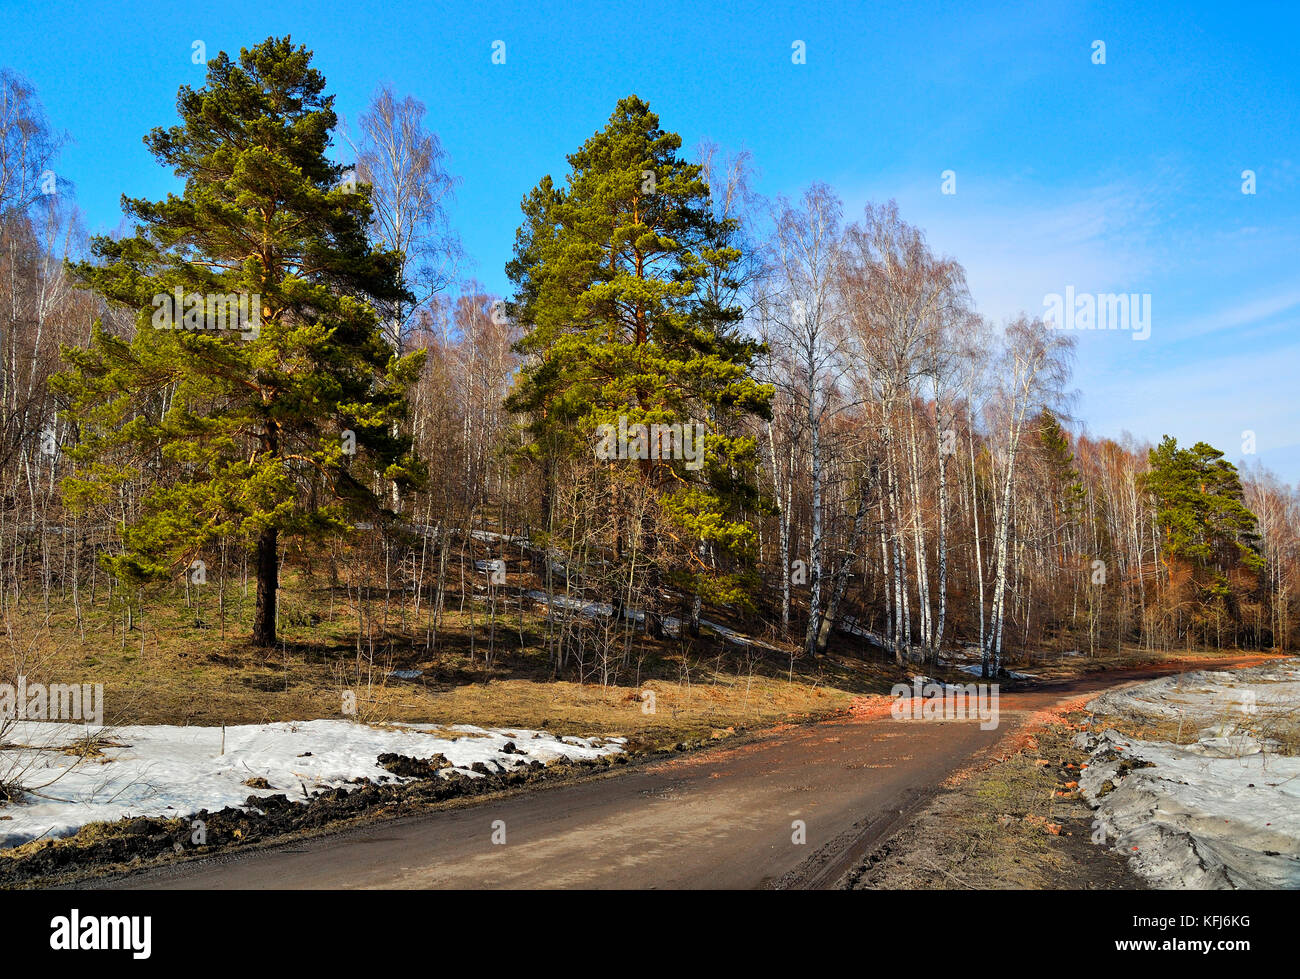 Bellissimo paesaggio a molla con la strada per la foresta di betulla. un ultima neve fonde ad una calda giornata di sole con un luminoso cielo blu Foto Stock